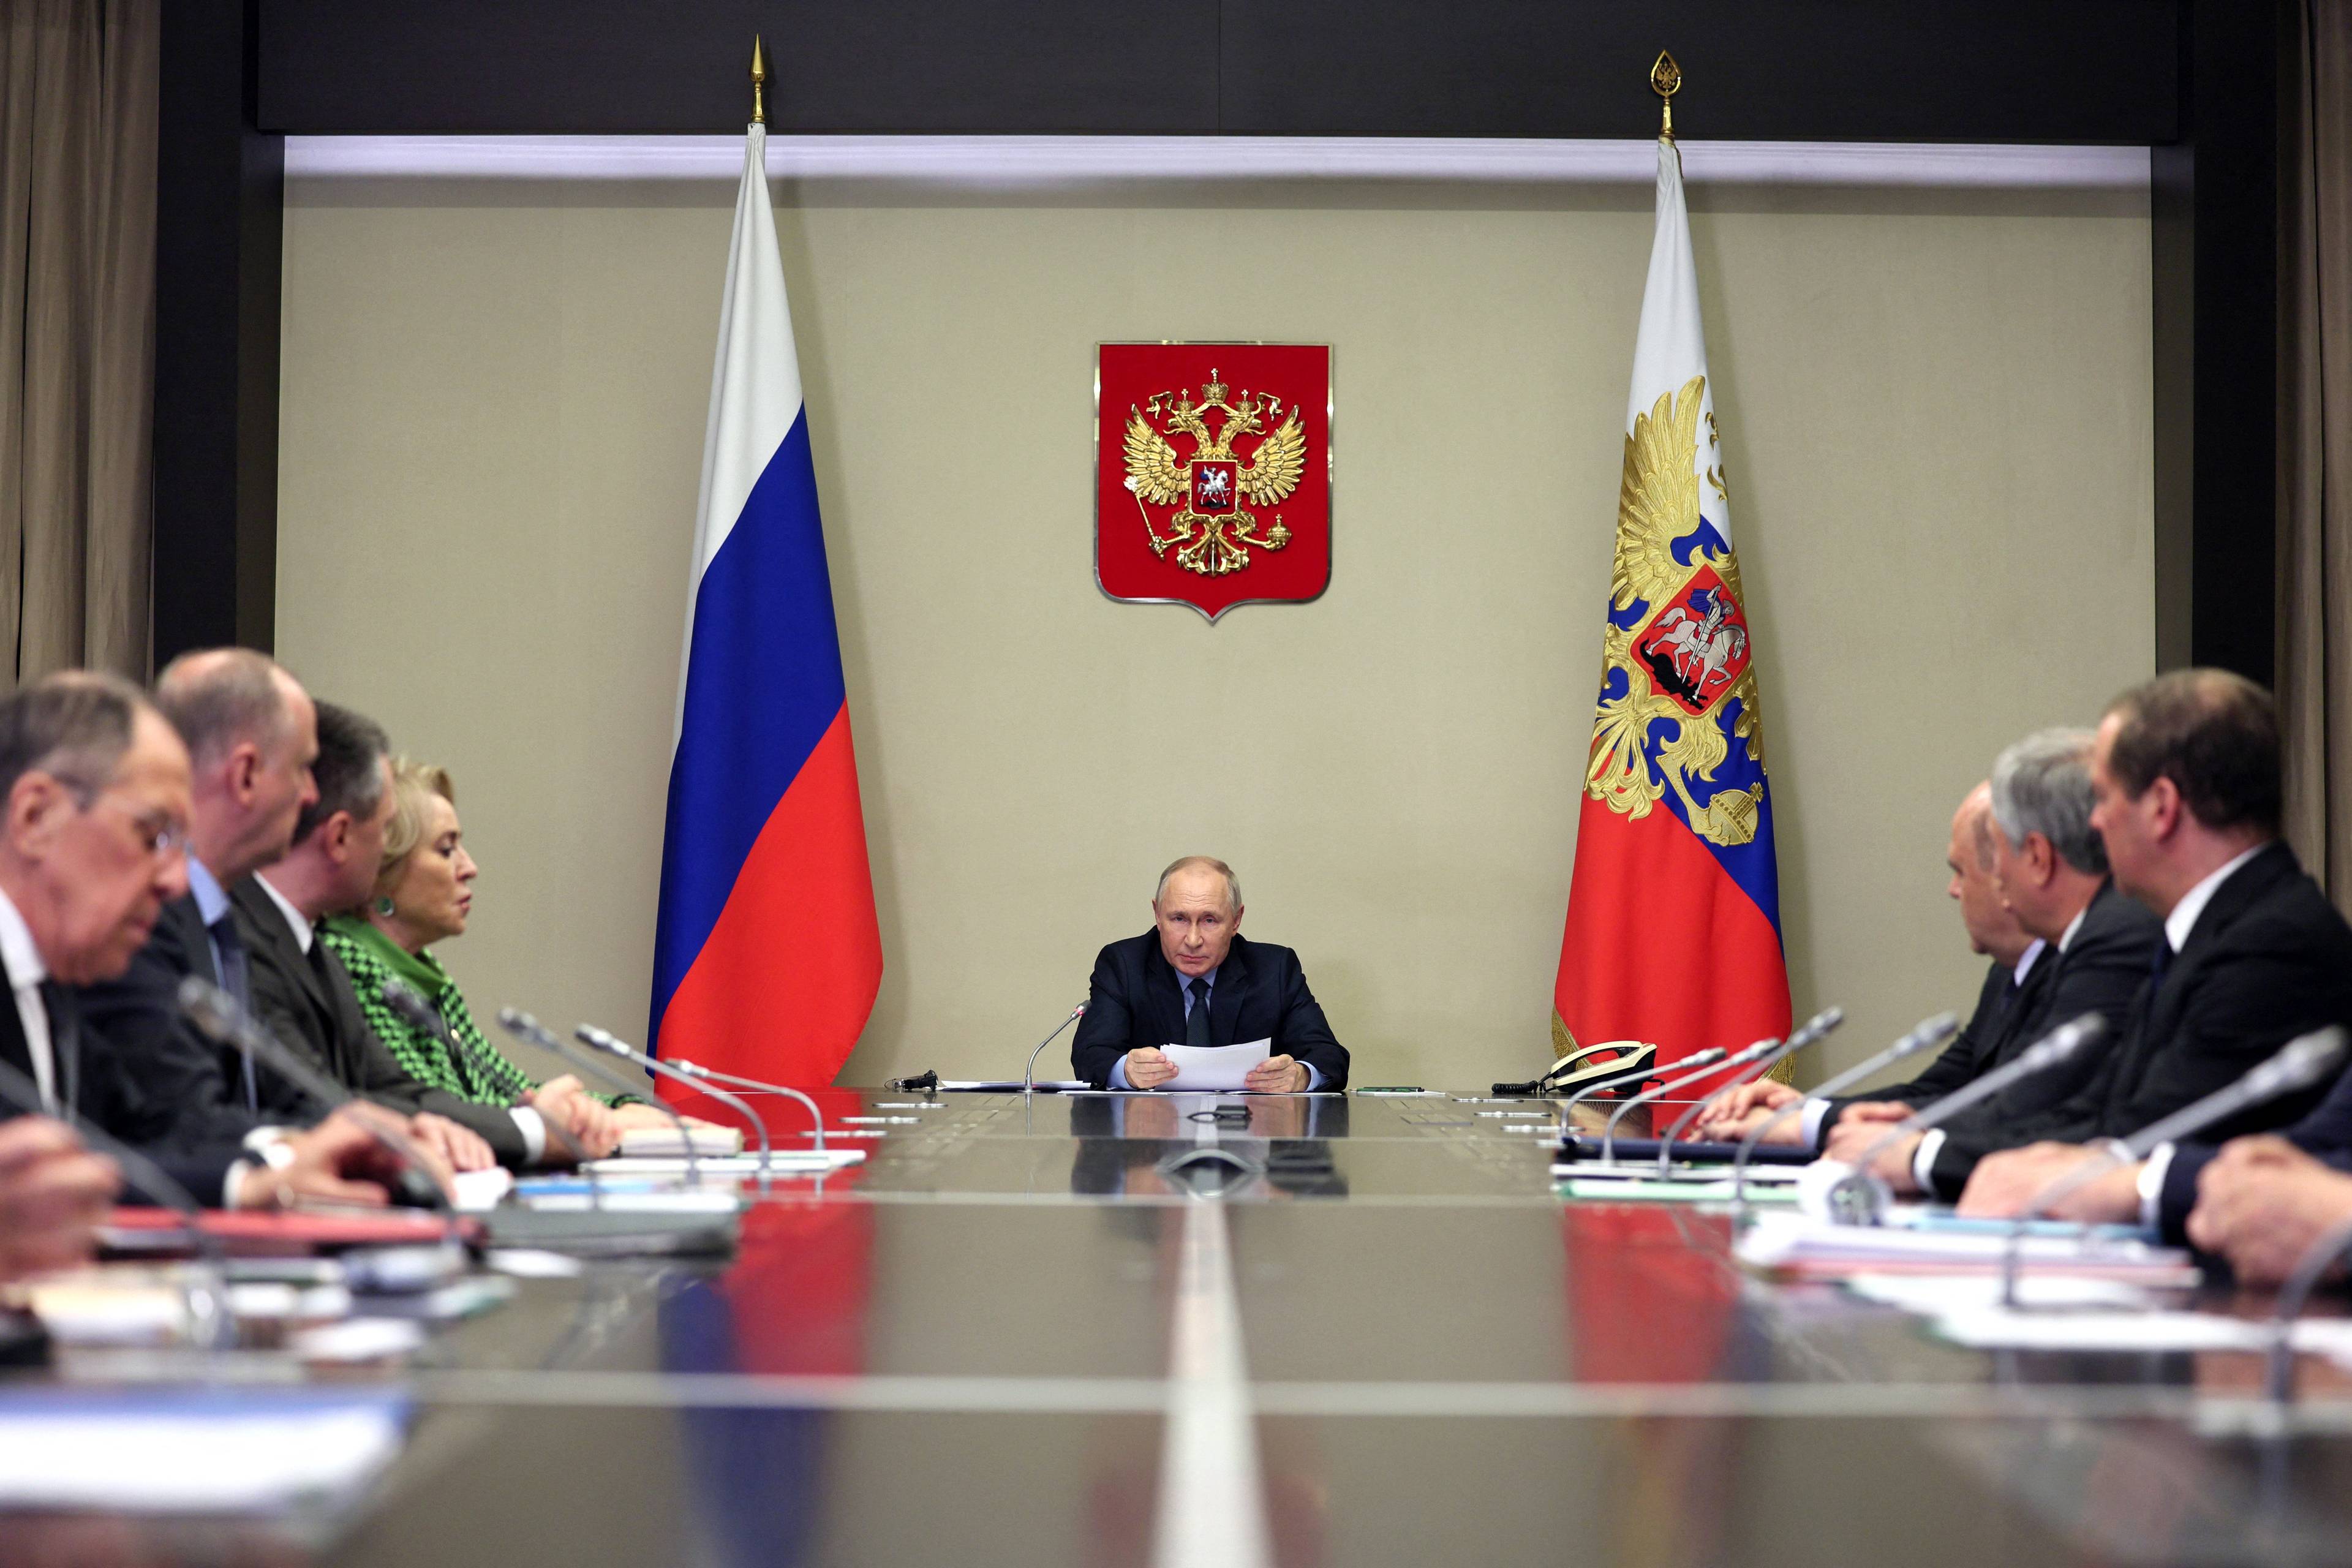 Putin u szczytu stołu, przy którym siedzą kremlowscy dostojnicy